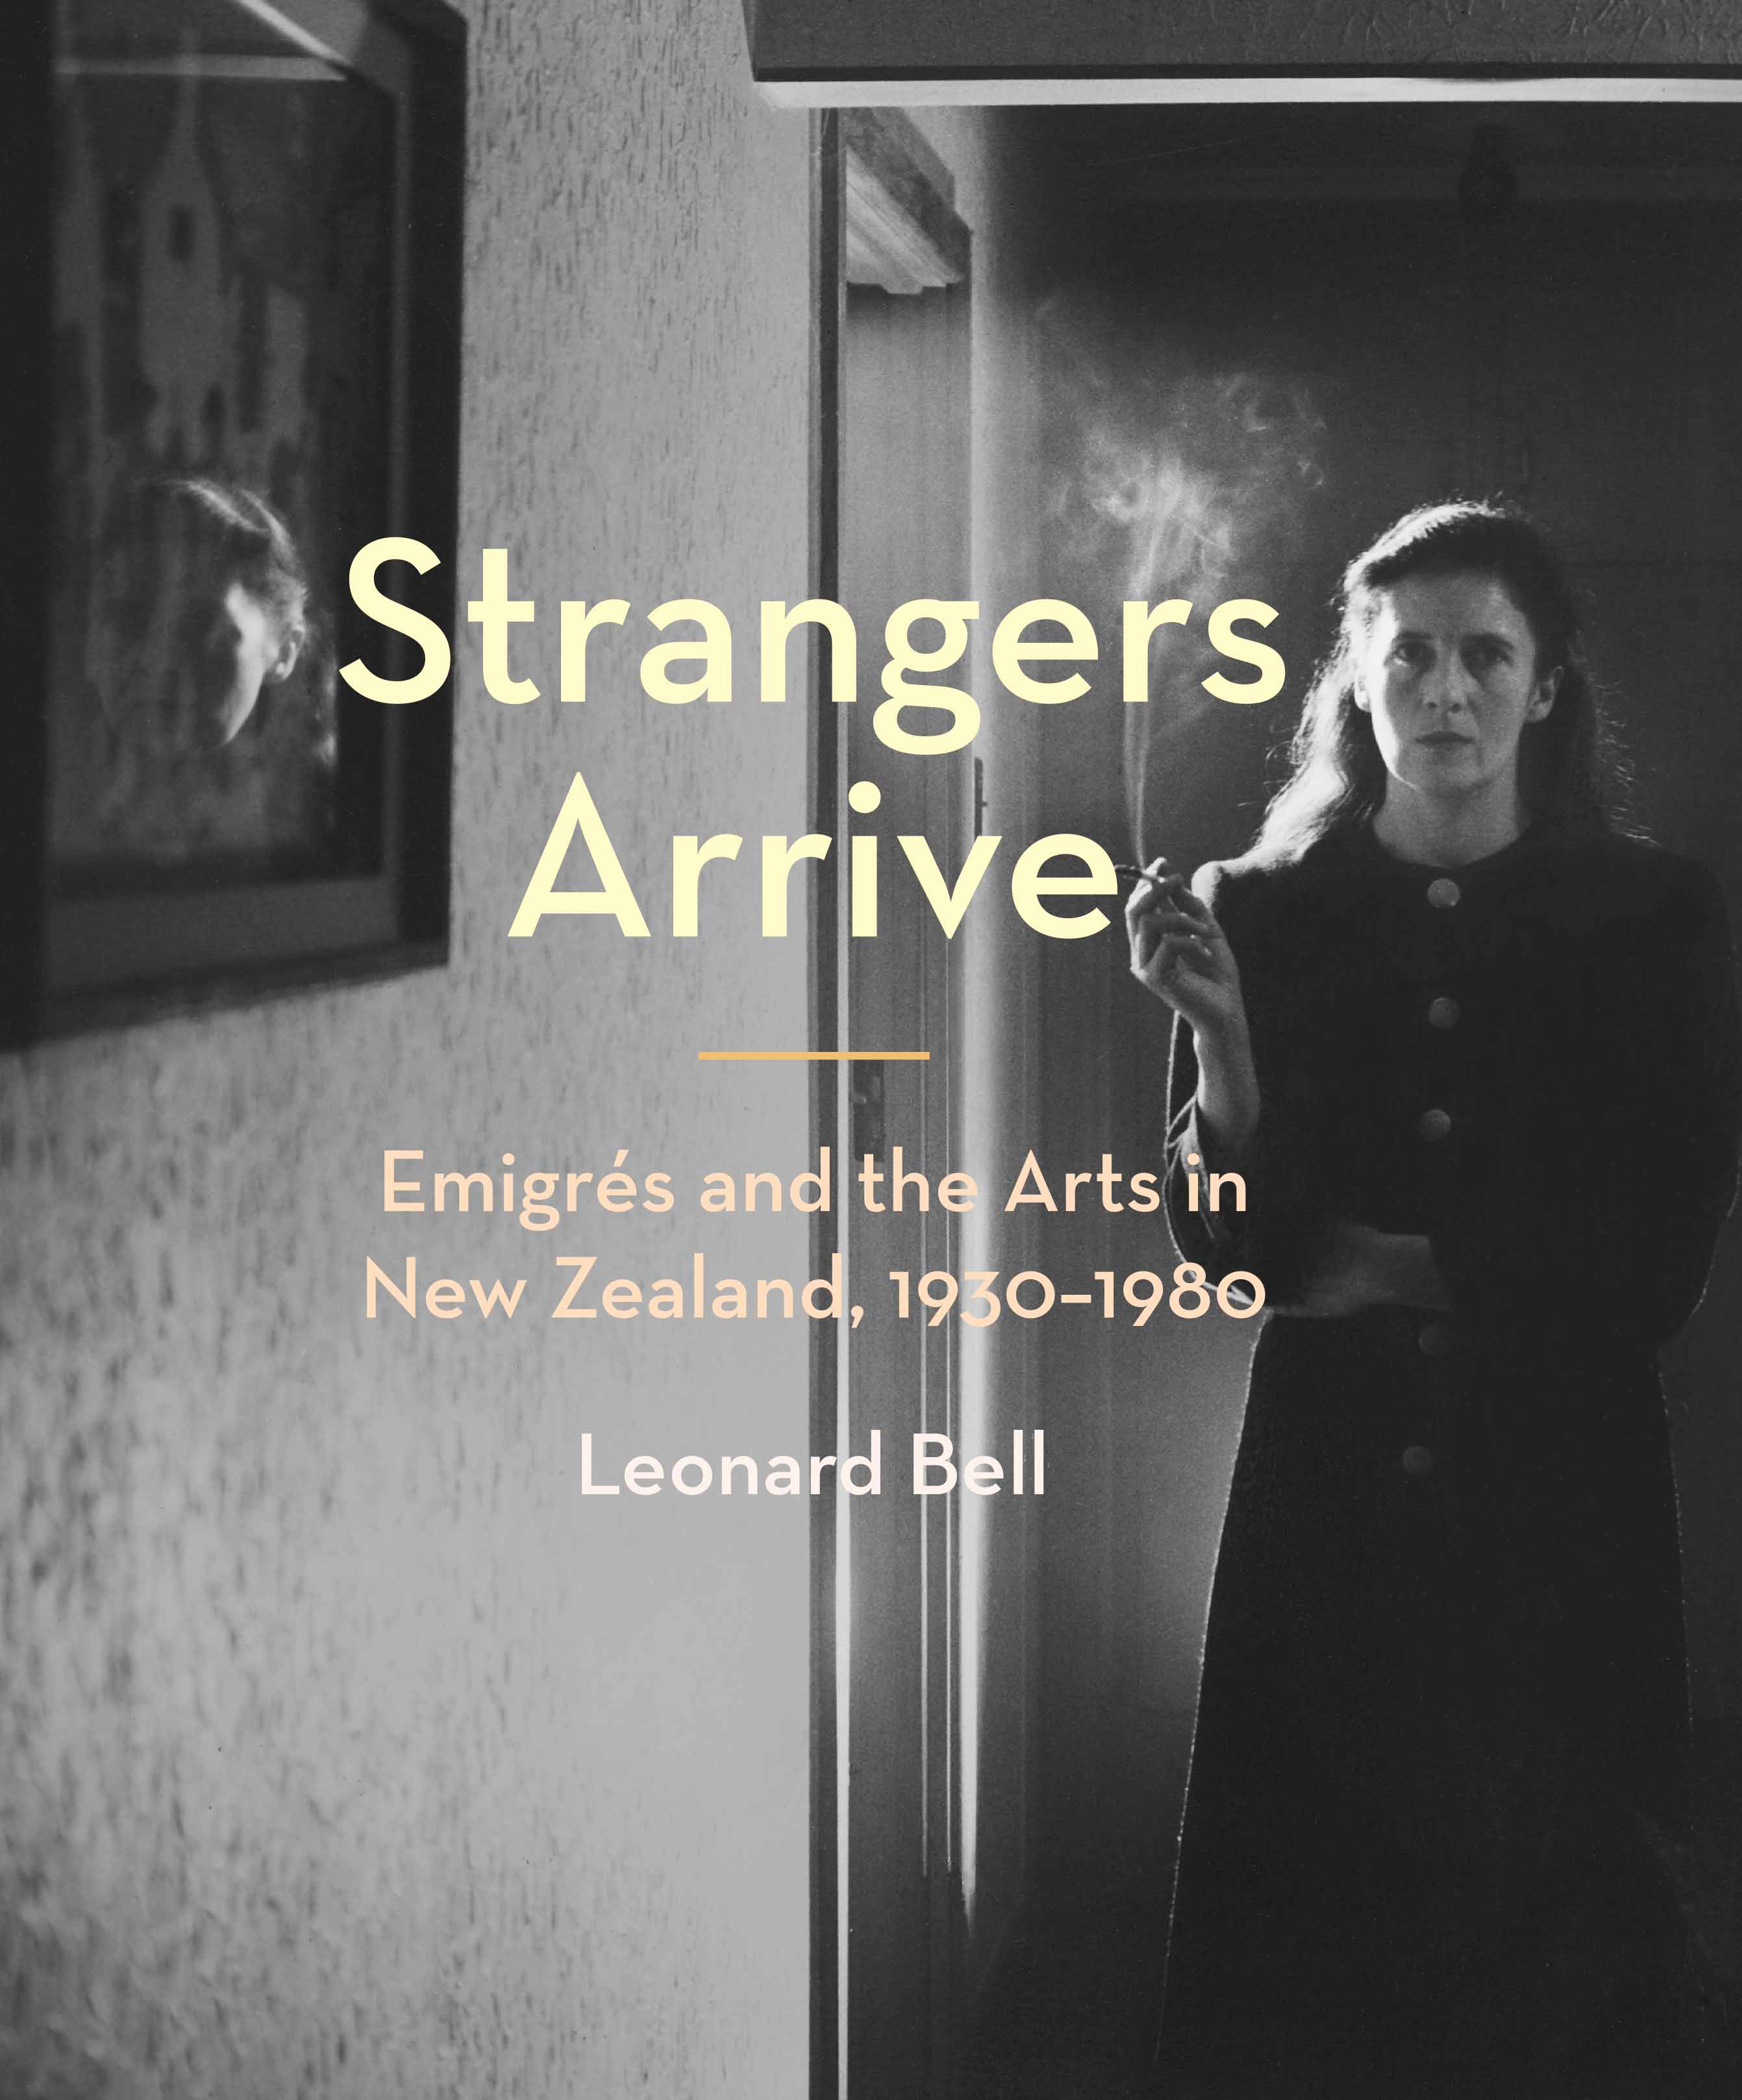 Talk: Artistic immigrants in NZ